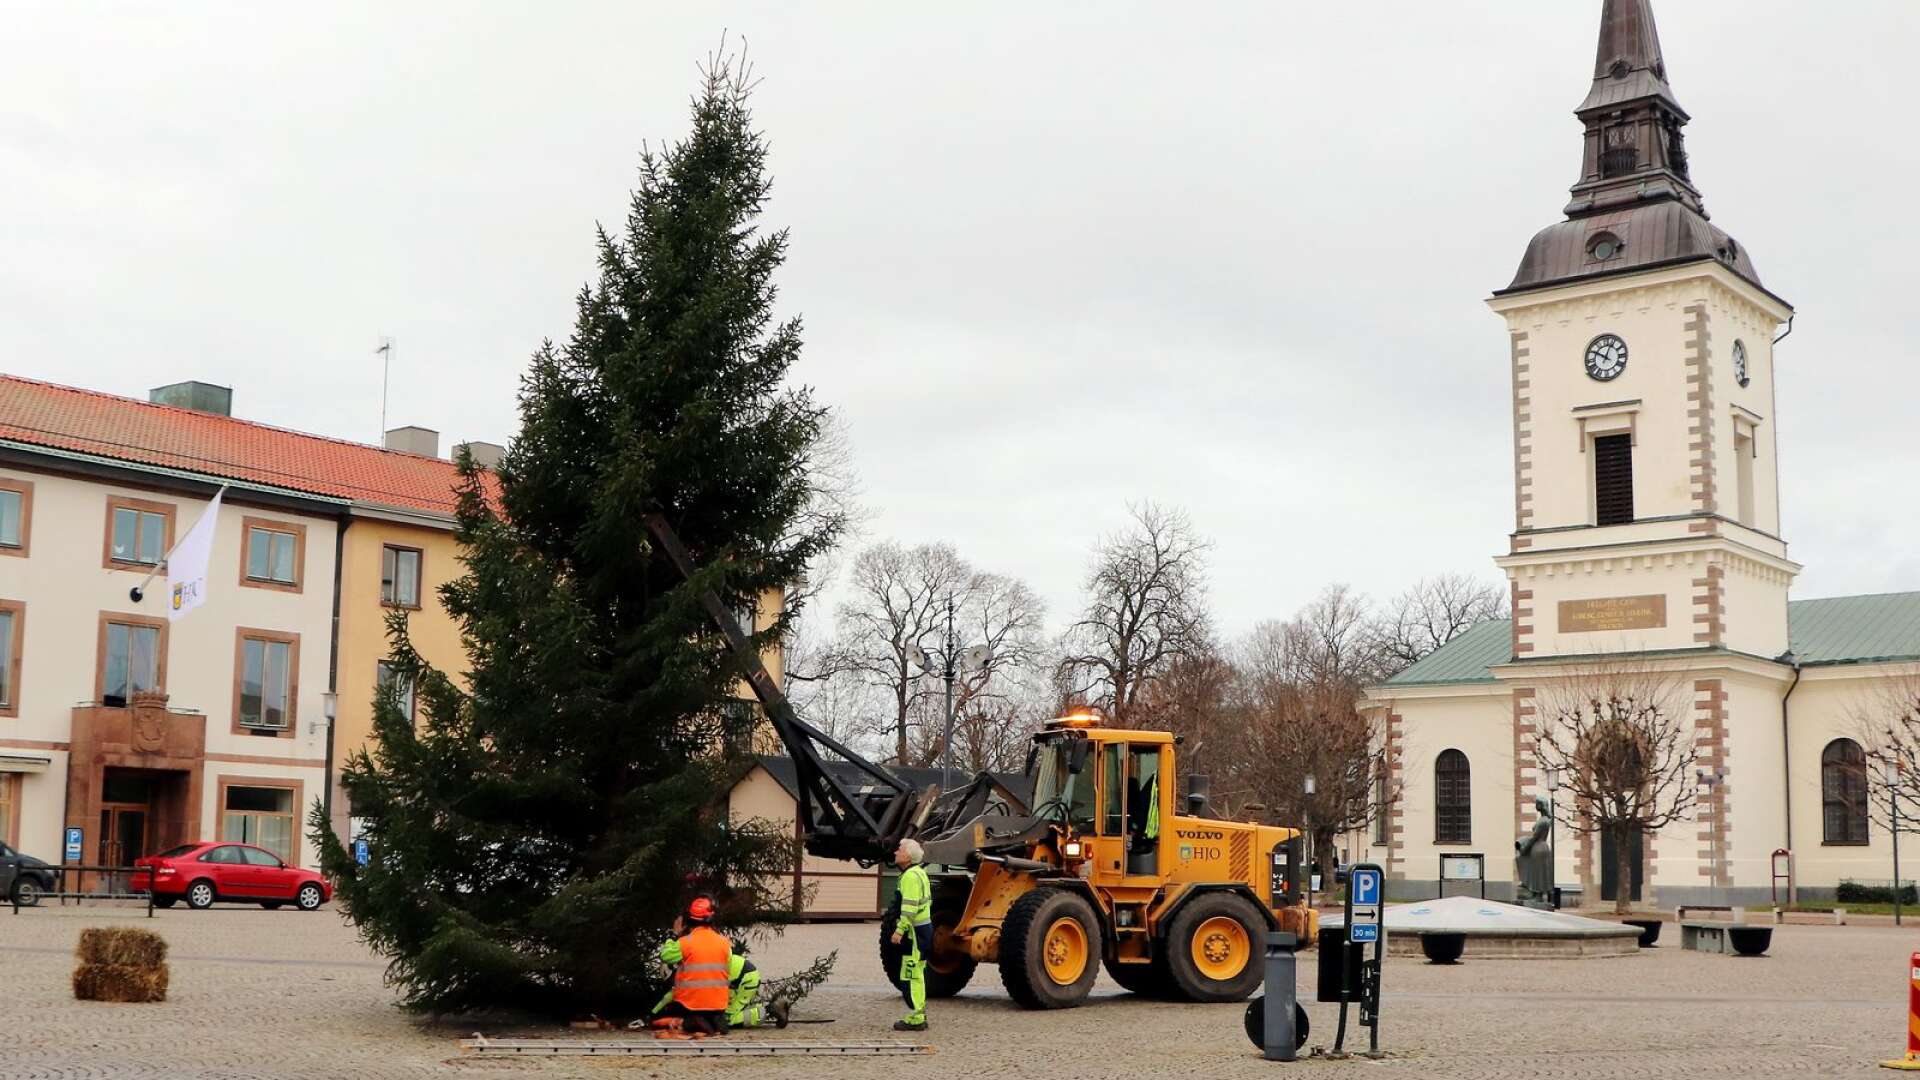 Årets gran restes på Stora torget i veckan. Den är skänkt av Almnäs och är en naturvuxen gran som ska pryda vårt torg i advents- och juletid, berättar Reita Påsse på kommunens parkavdelning.